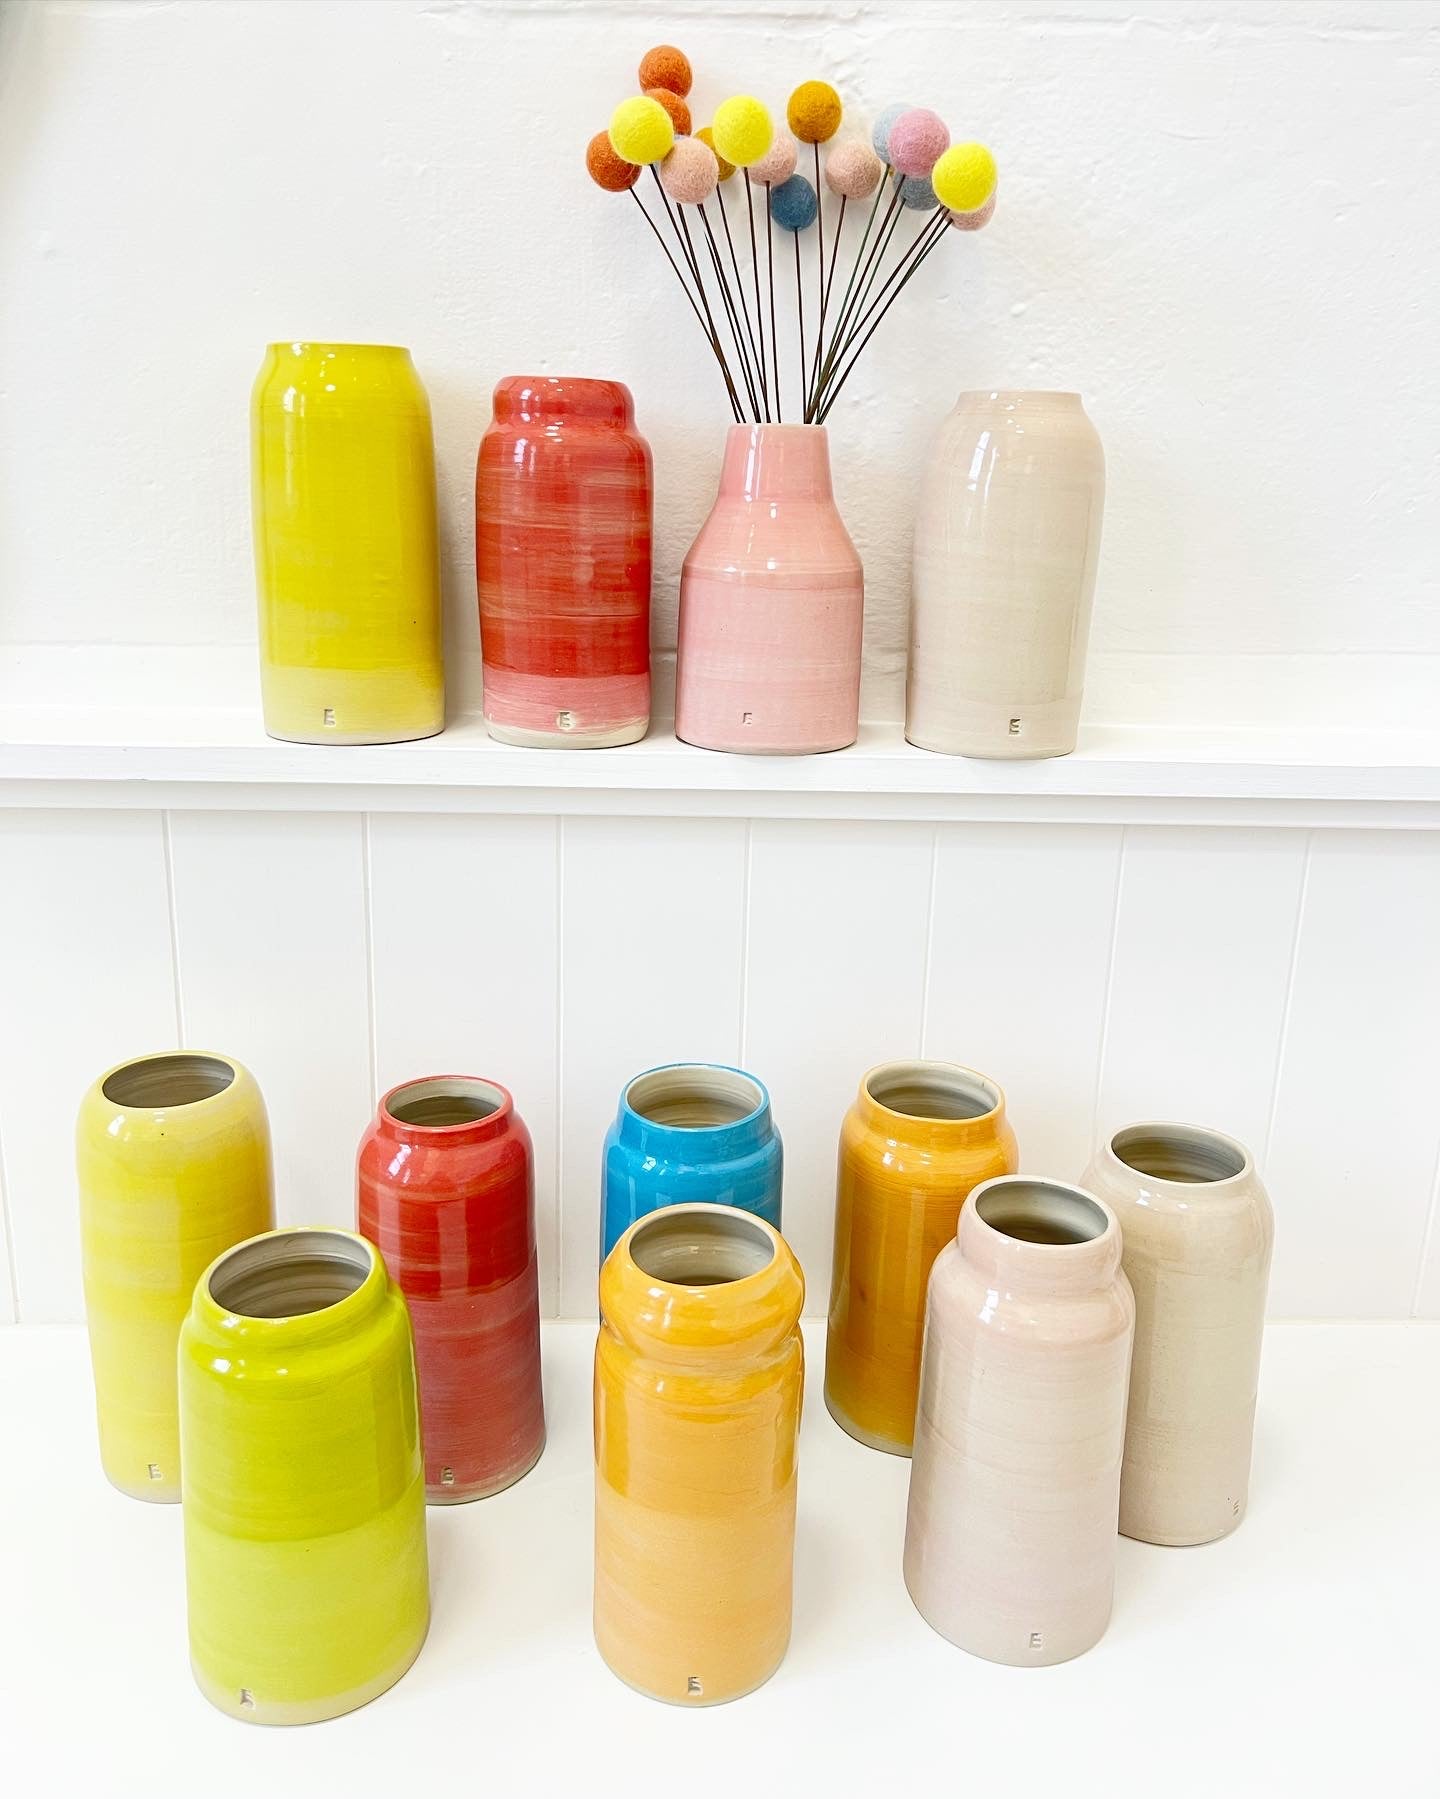 Colour Block Ceramic Vase - Orange